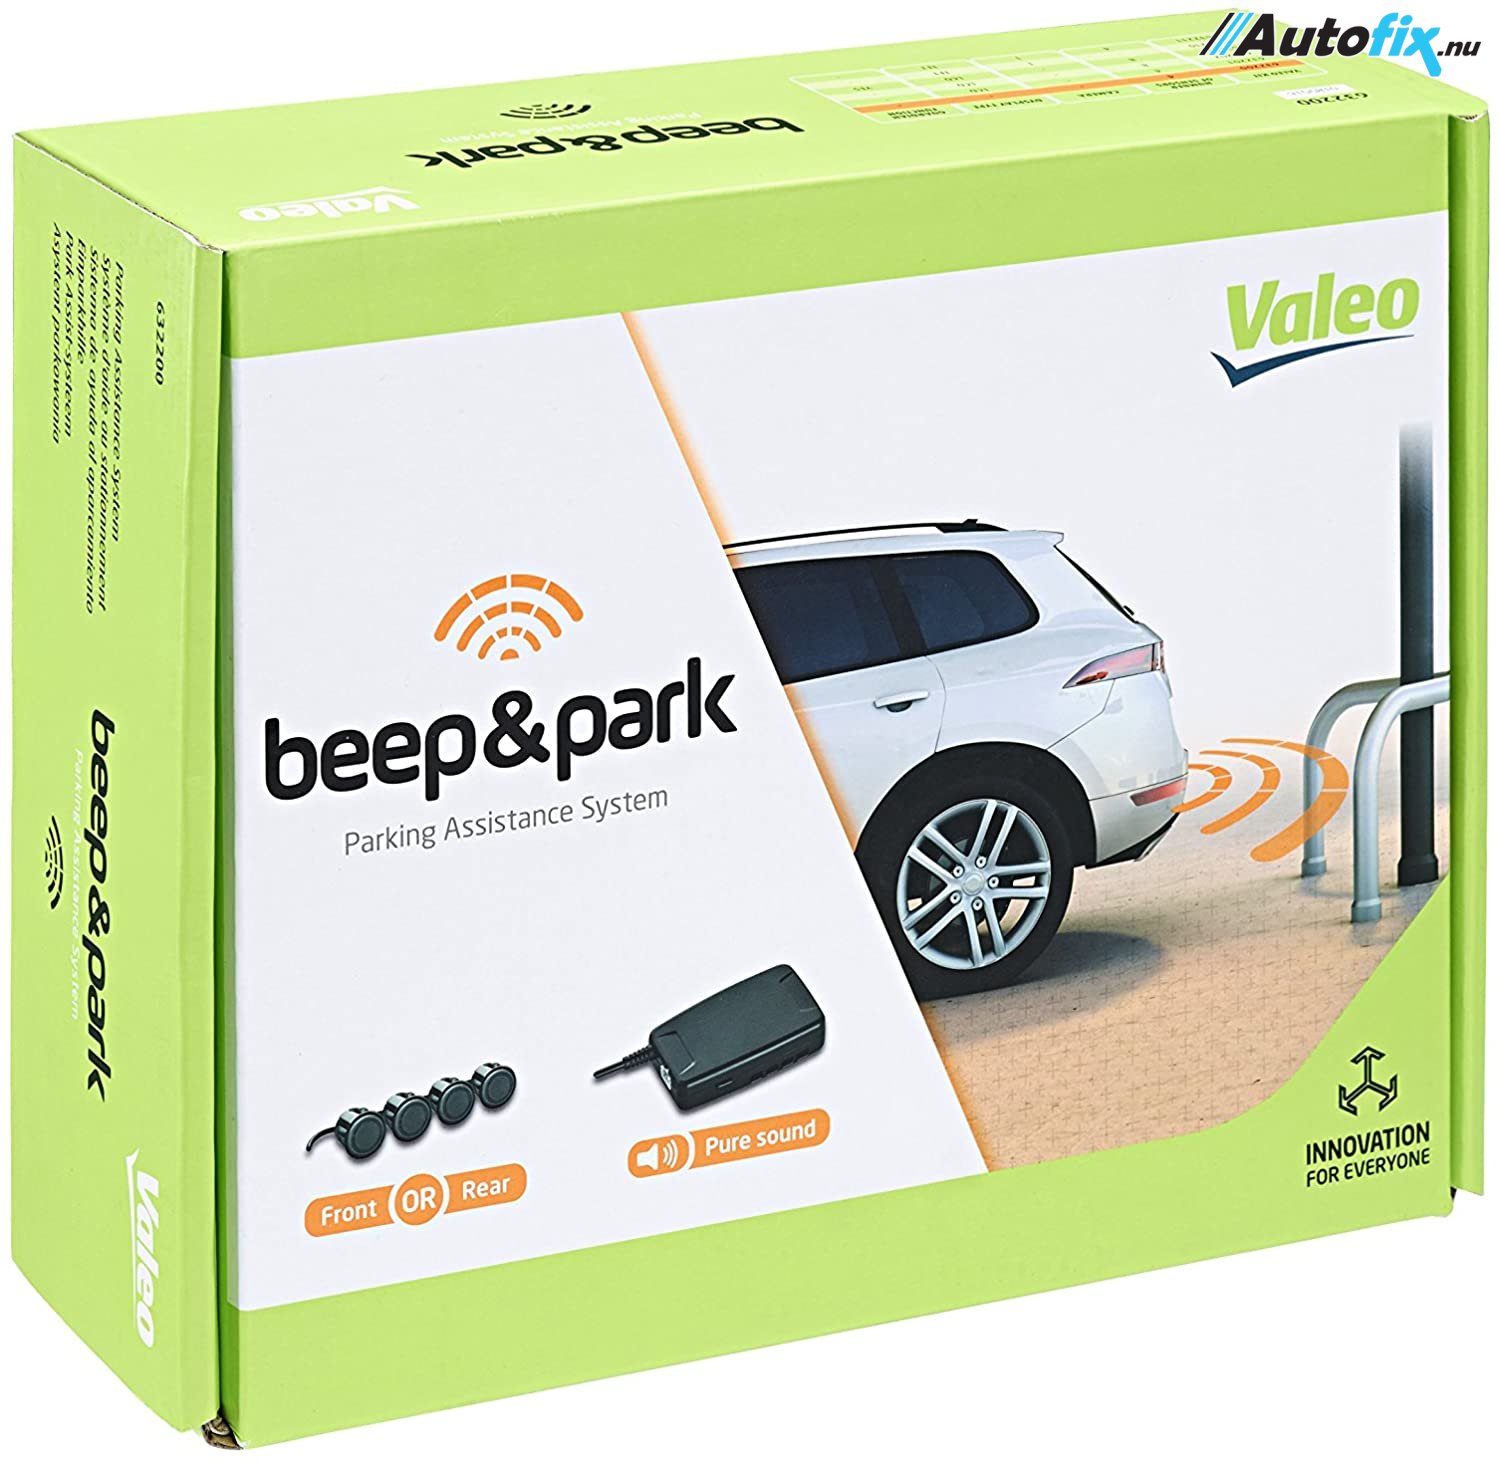 cricket filosofi ophøre Baksensor Kit Med 4 Sensorer - Valeo Beep & Park - Til For Eller Bag -  Parkeringssensor - Autofix.nu